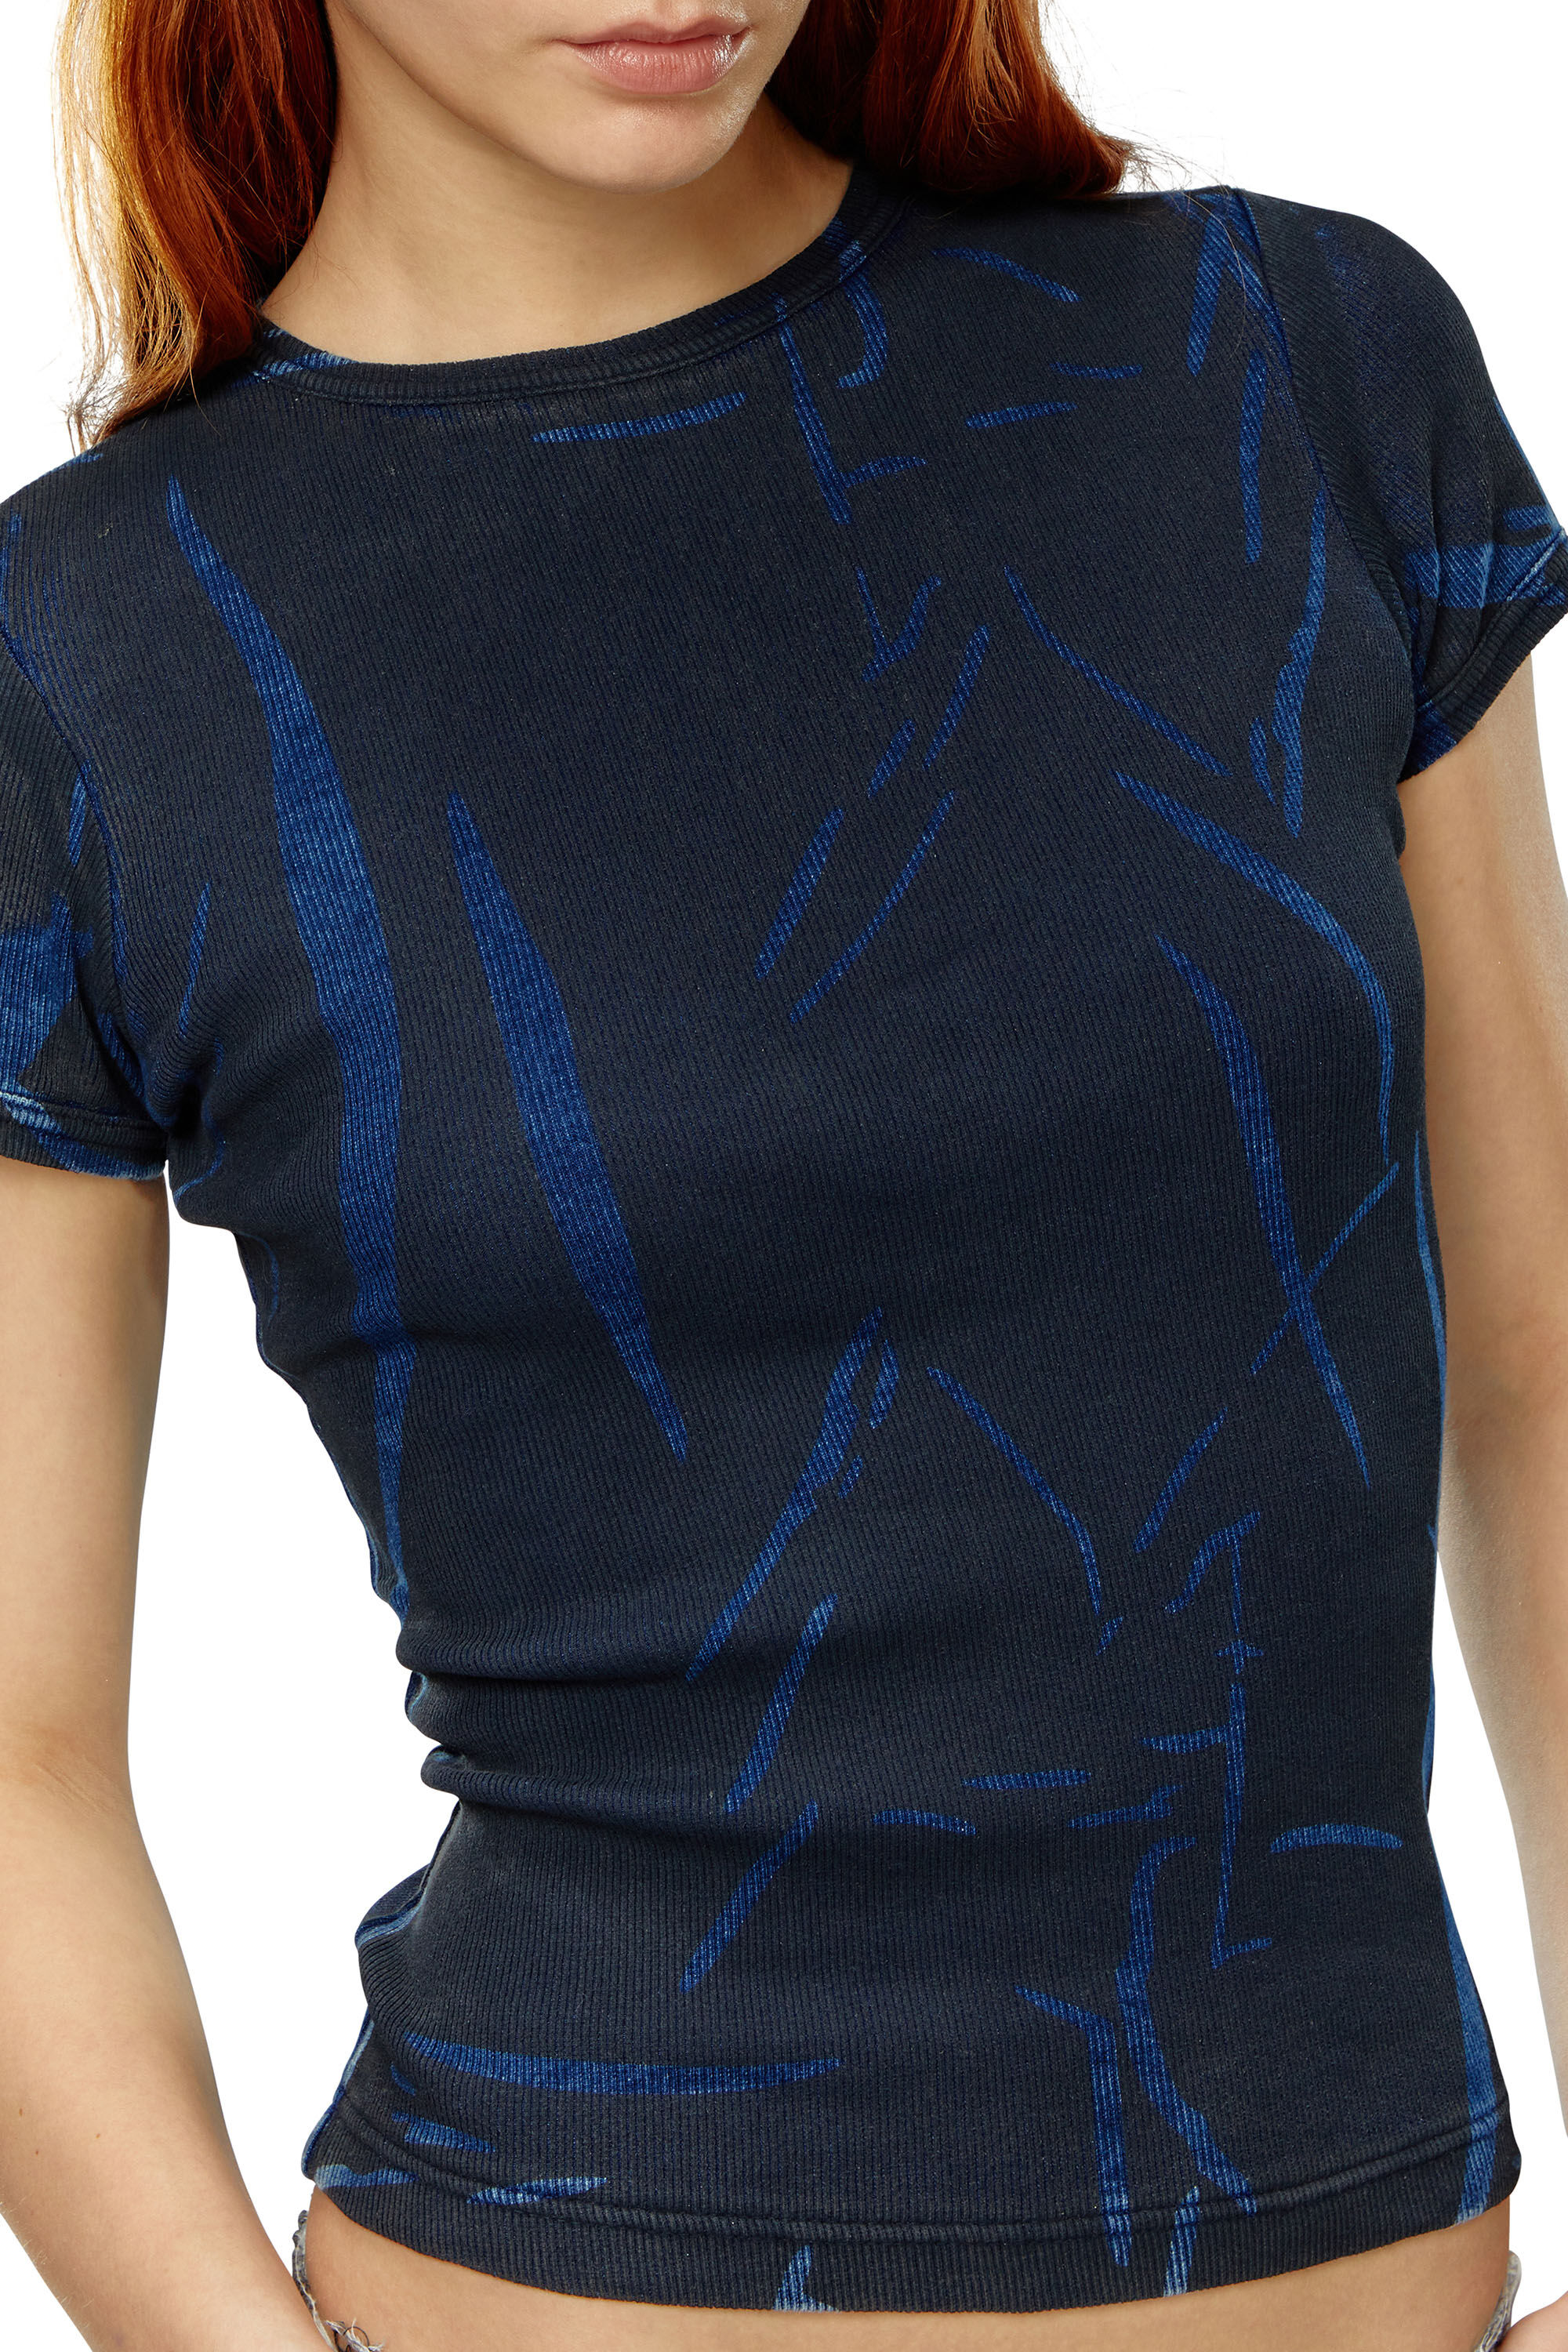 Diesel - DTO-D-DREW, Mujer Camiseta con estampado de pliegues in Azul marino - Image 5